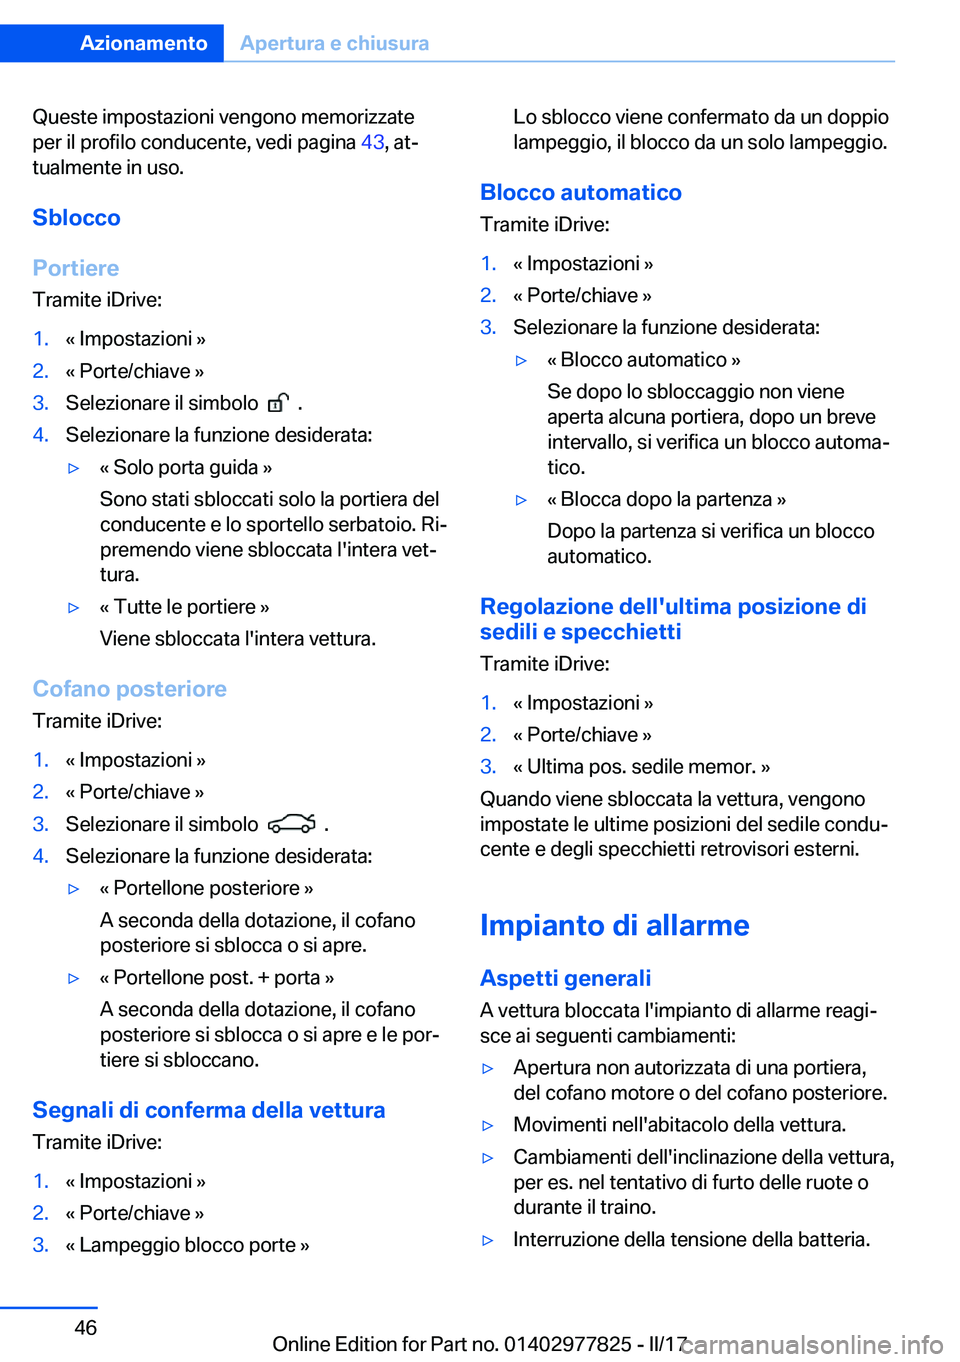 BMW X3 2017  Libretti Di Uso E manutenzione (in Italian) �Q�u�e�s�t�e� �i�m�p�o�s�t�a�z�i�o�n�i� �v�e�n�g�o�n�o� �m�e�m�o�r�i�z�z�a�t�e�p�e�r� �i�l� �p�r�o�f�i�l�o� �c�o�n�d�u�c�e�n�t�e�,� �v�e�d�i� �p�a�g�i�n�a�  �4�3�,� �a�tª
�t�u�a�l�m�e�n�t�e� �i�n� �